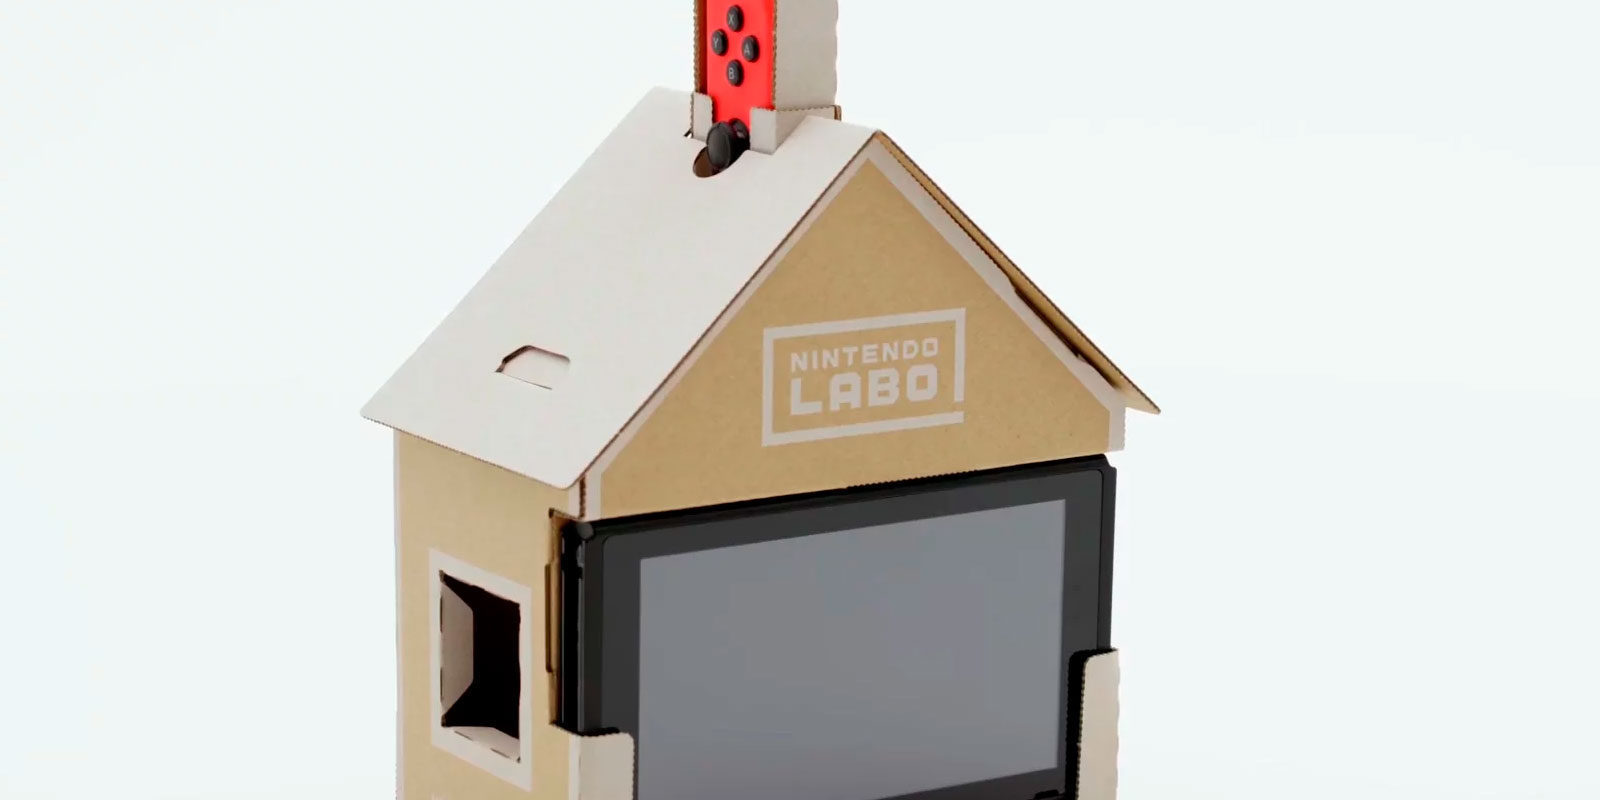 Los kits de Nintendo Labo no serán obligatorios para disfrutar de la experiencia